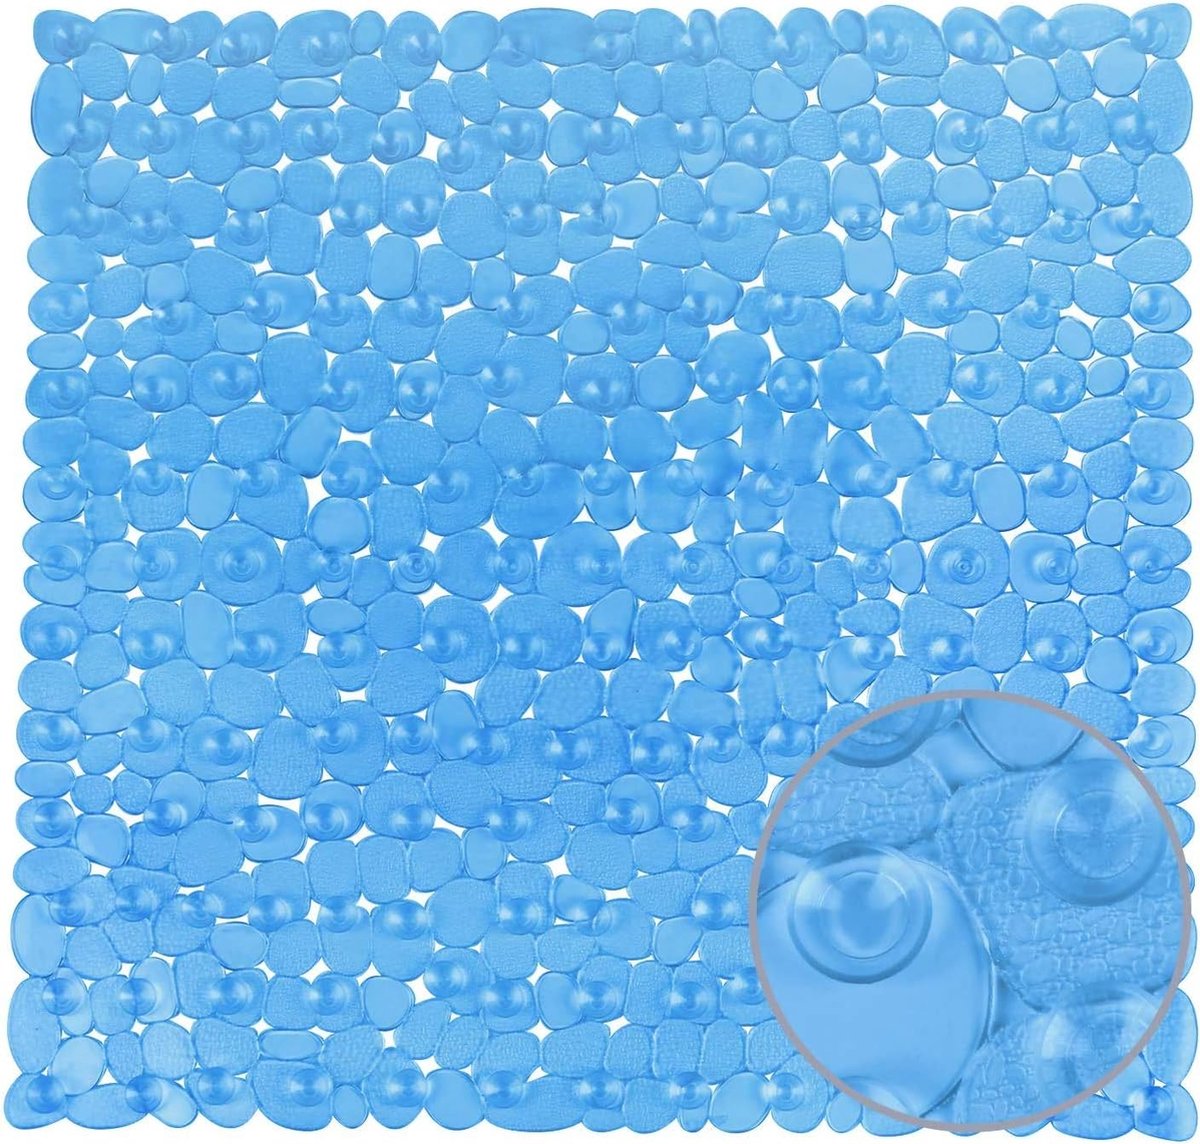 Douchemat, antislipmat van kunststof, voor kinderen en familie, douche, antislip badmat met honderden zuignappen, vierkante douchemat pvc, 54 x 54 cm, groot